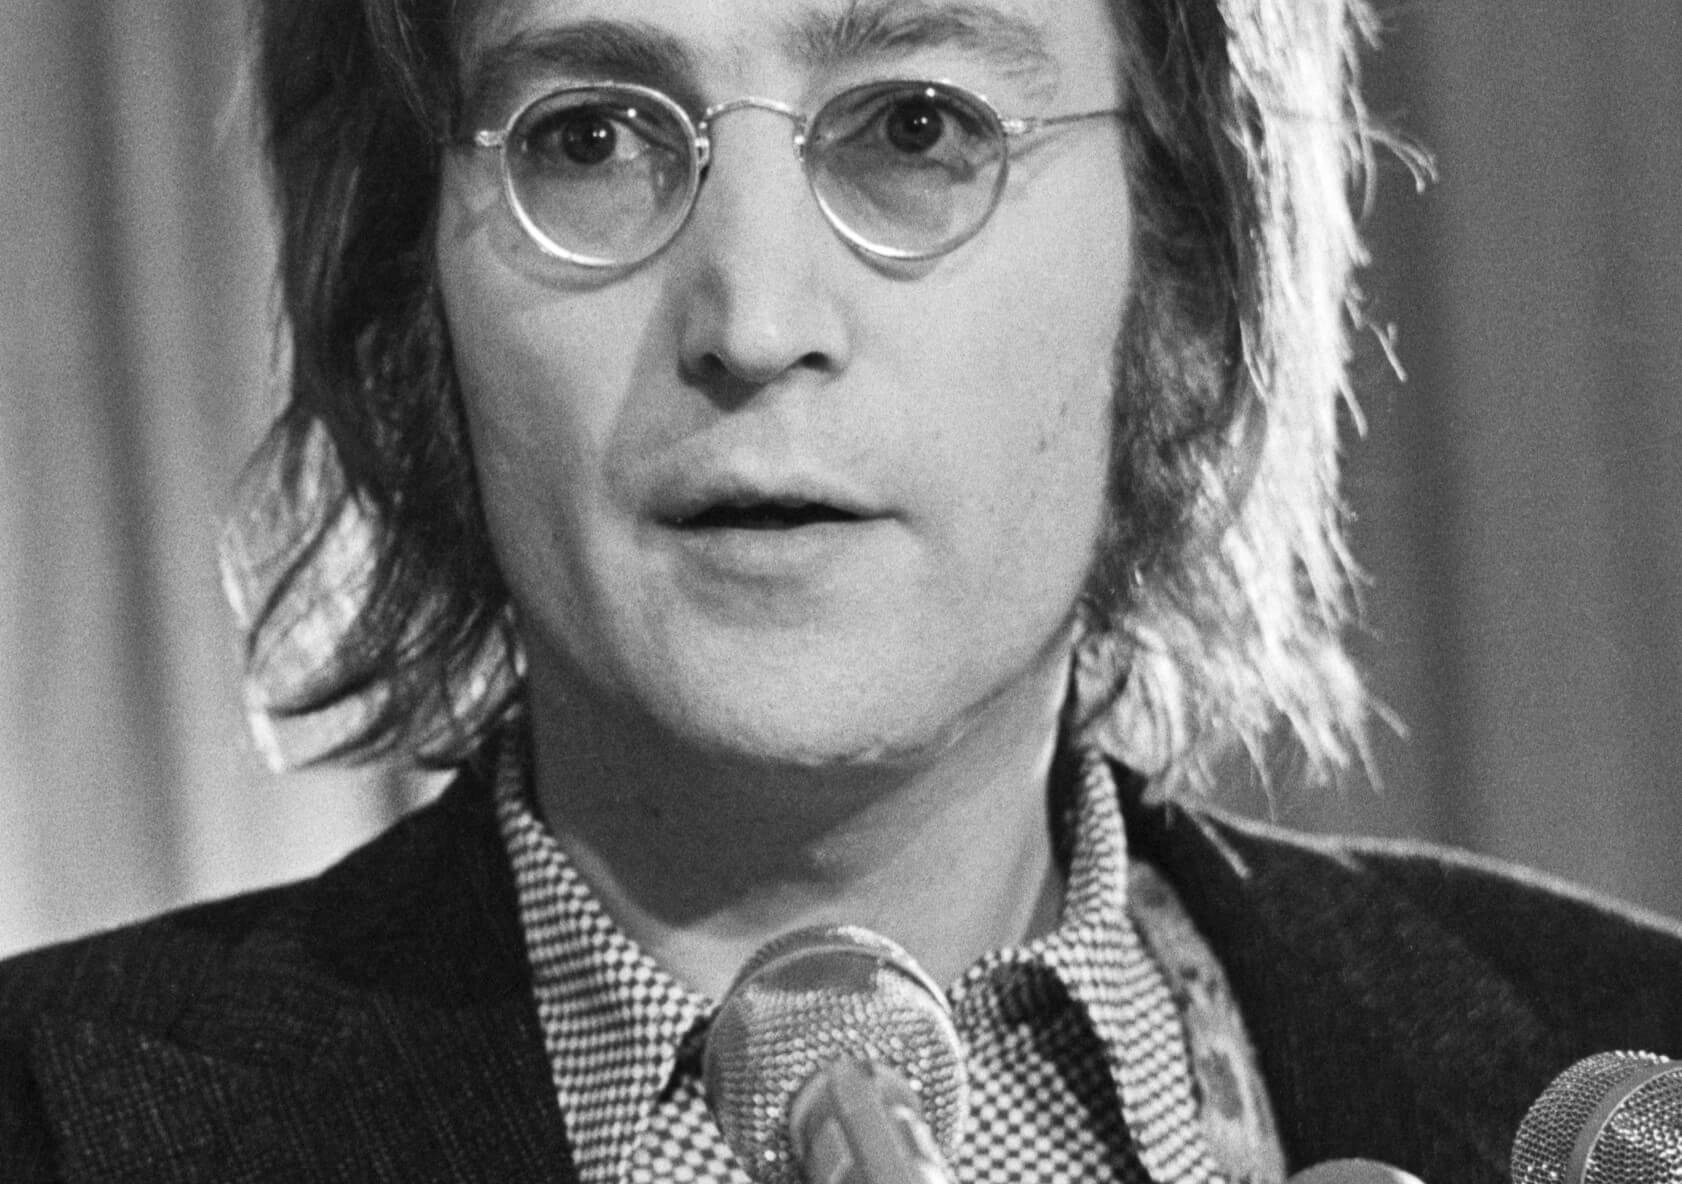 "Instant Karma!" singer John Lennon wearing glasses